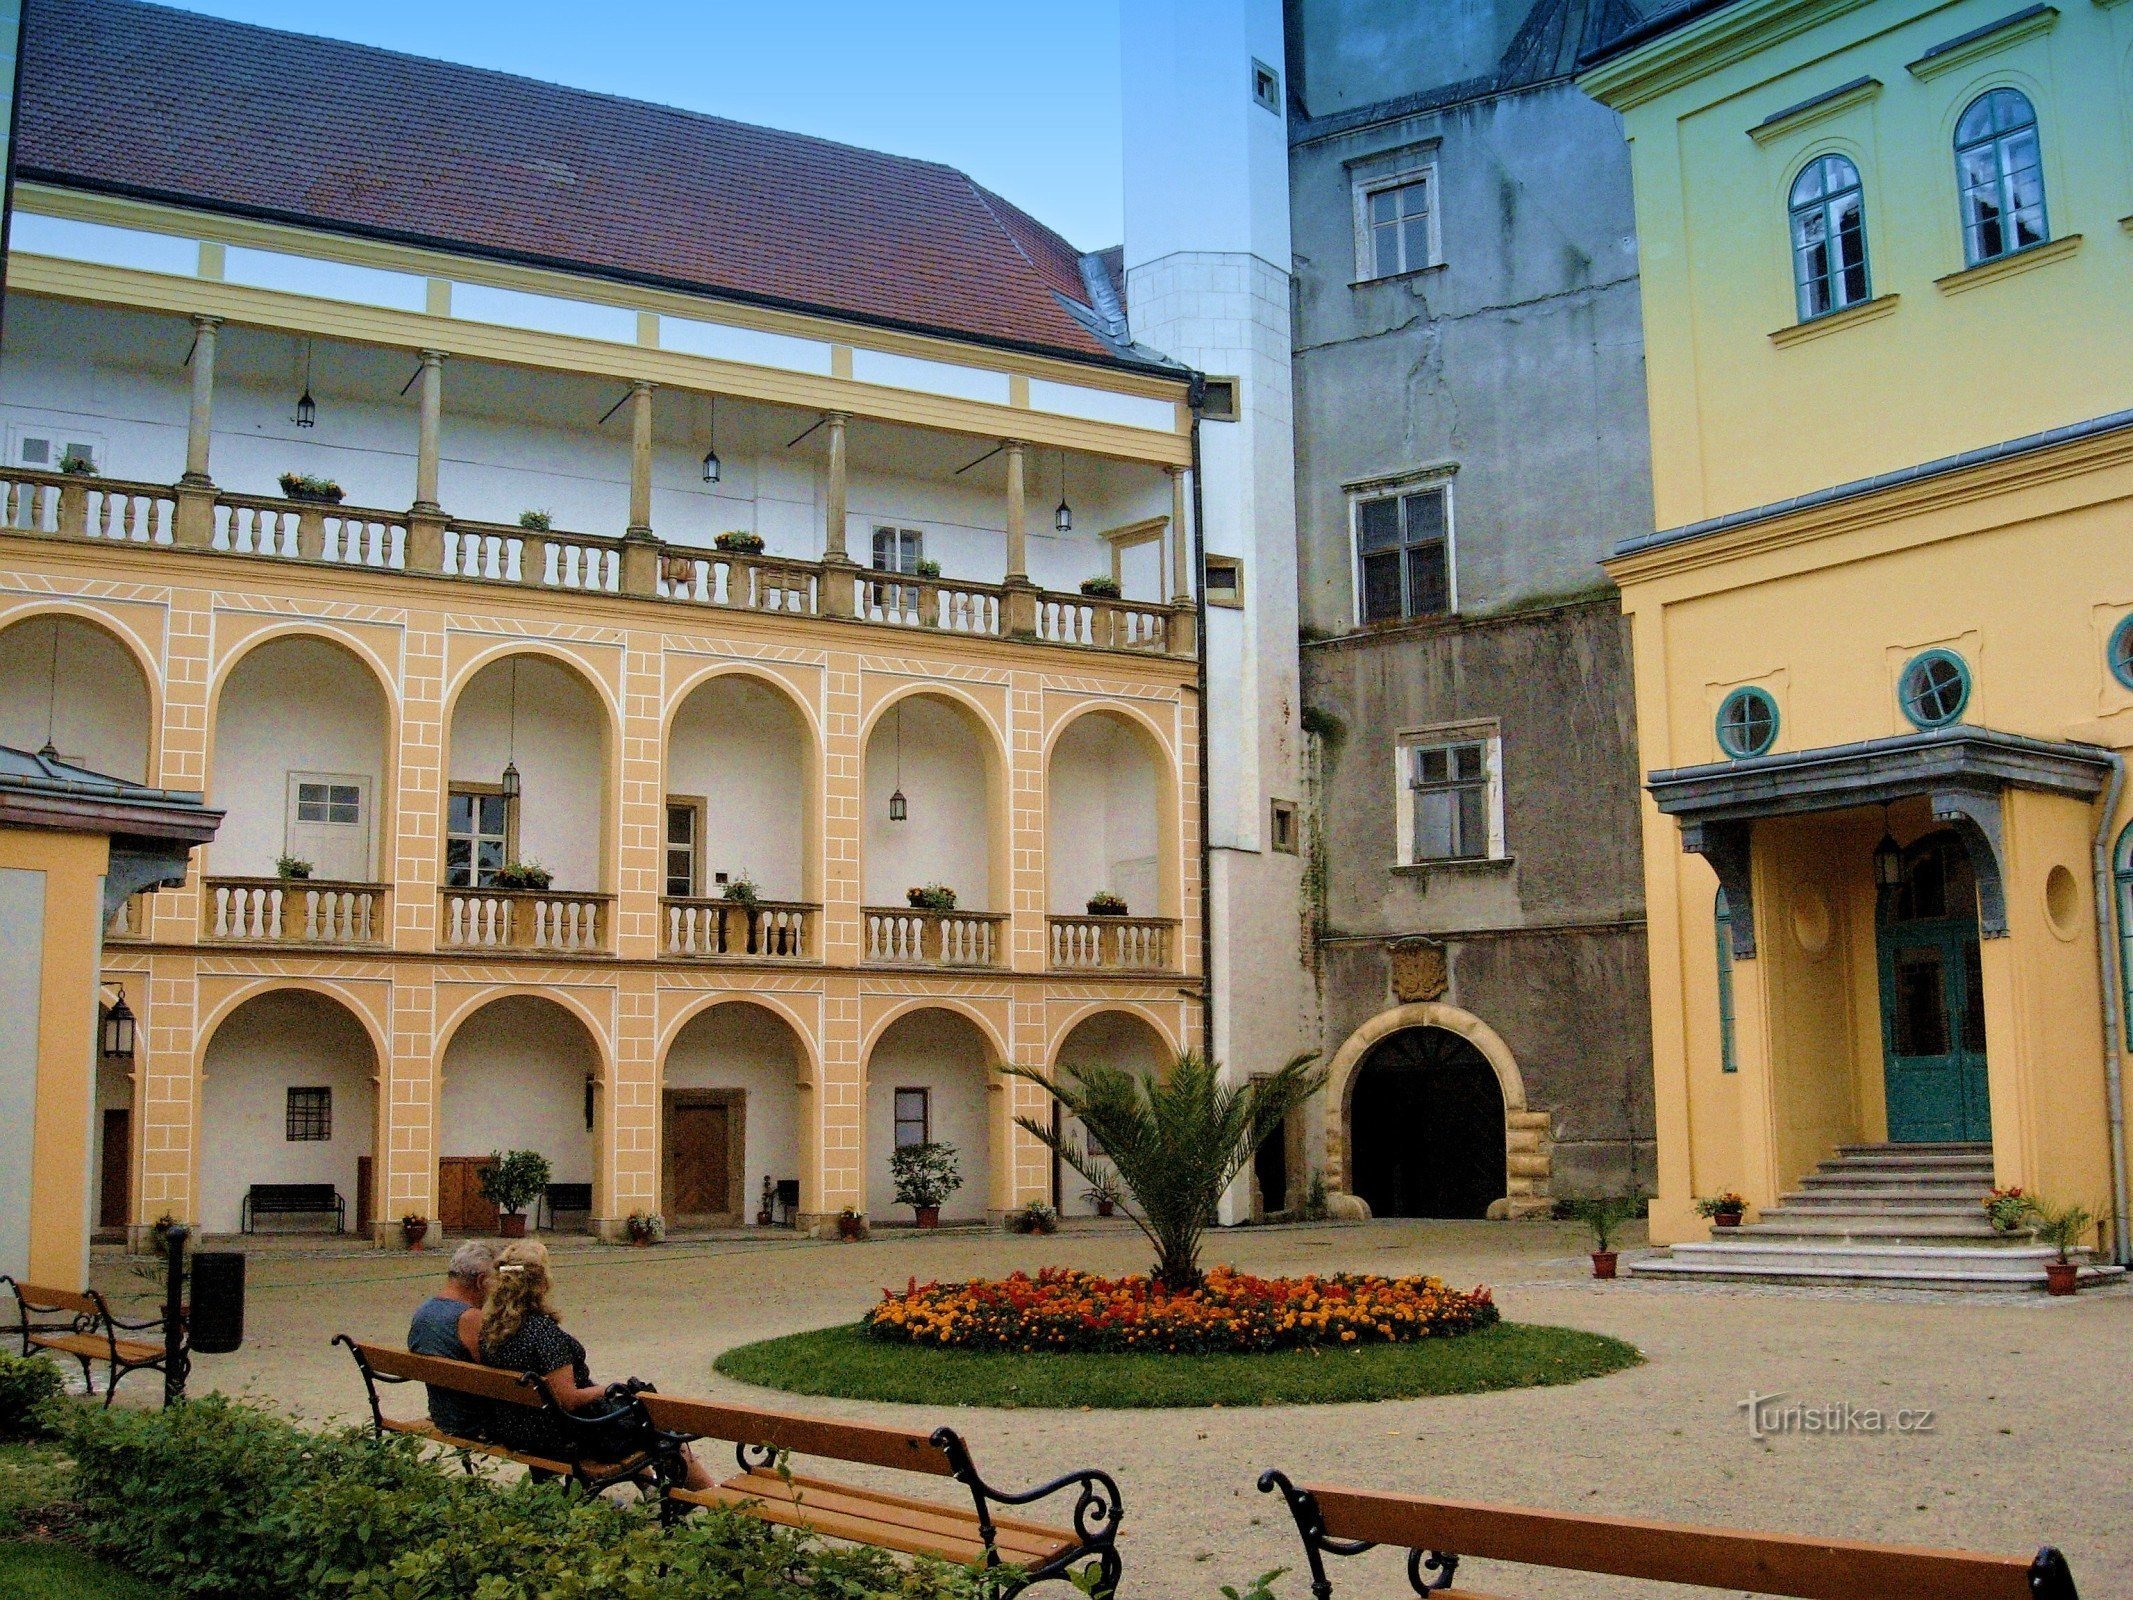 For en oplevelse på slottet i Tovačov